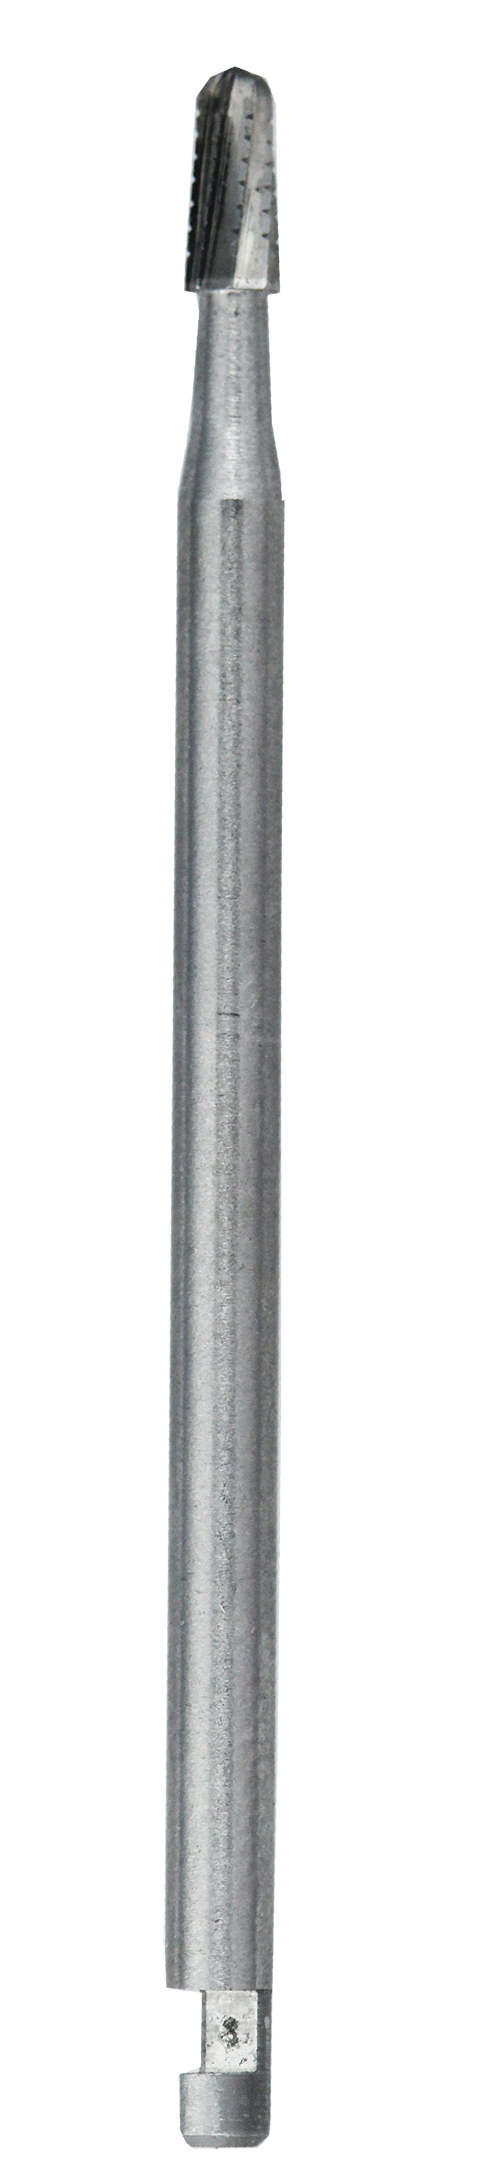 JN (J-Notch) (44.5mm)